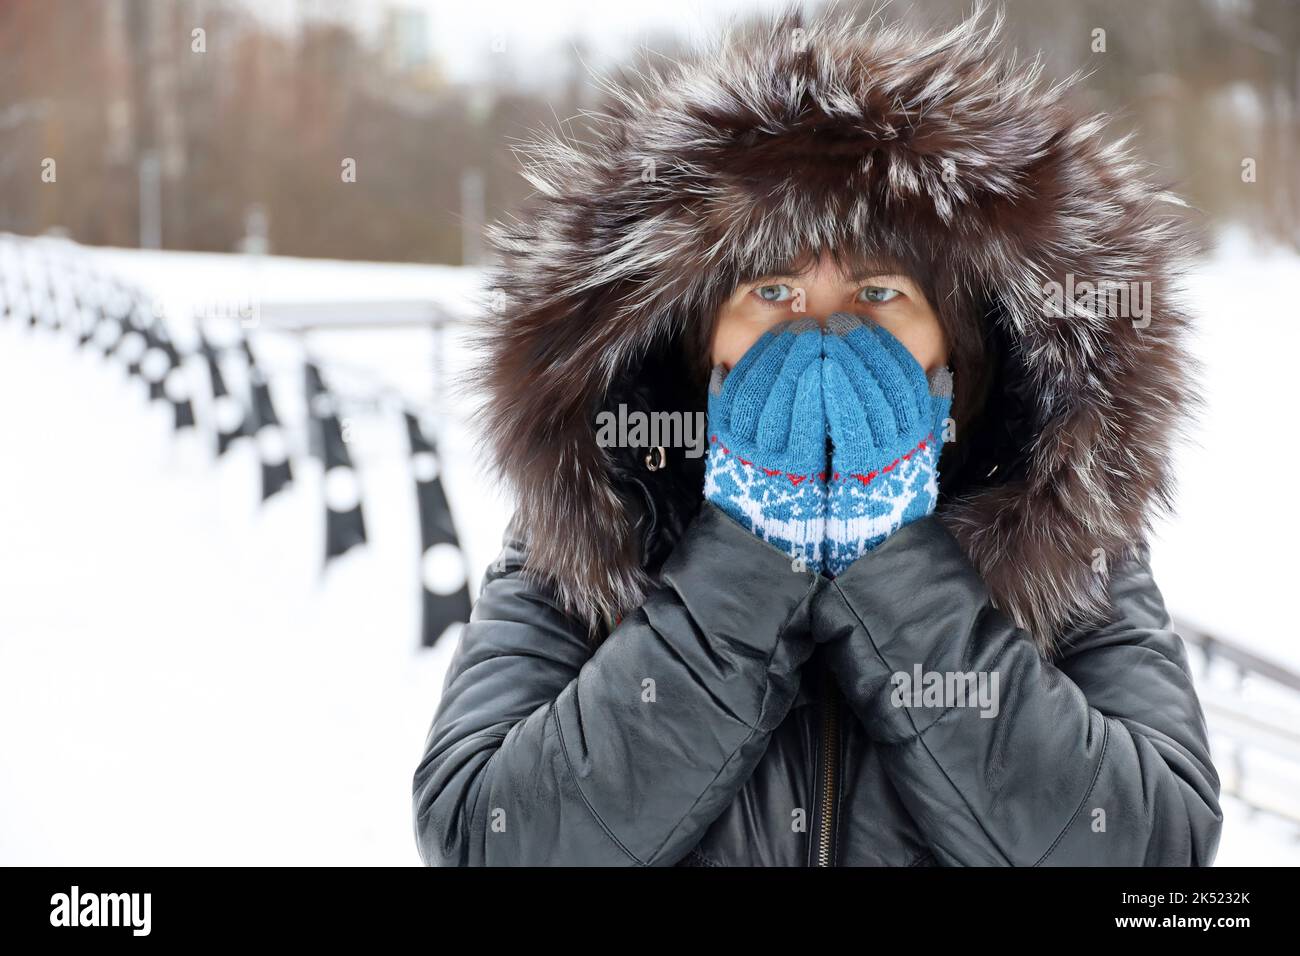 Temps de gel en hiver, femme en cuir manteau avec capuche en fourrure marchant dans une rue pendant la neige et couvrant son visage par les mains dans des gants tricotés Banque D'Images